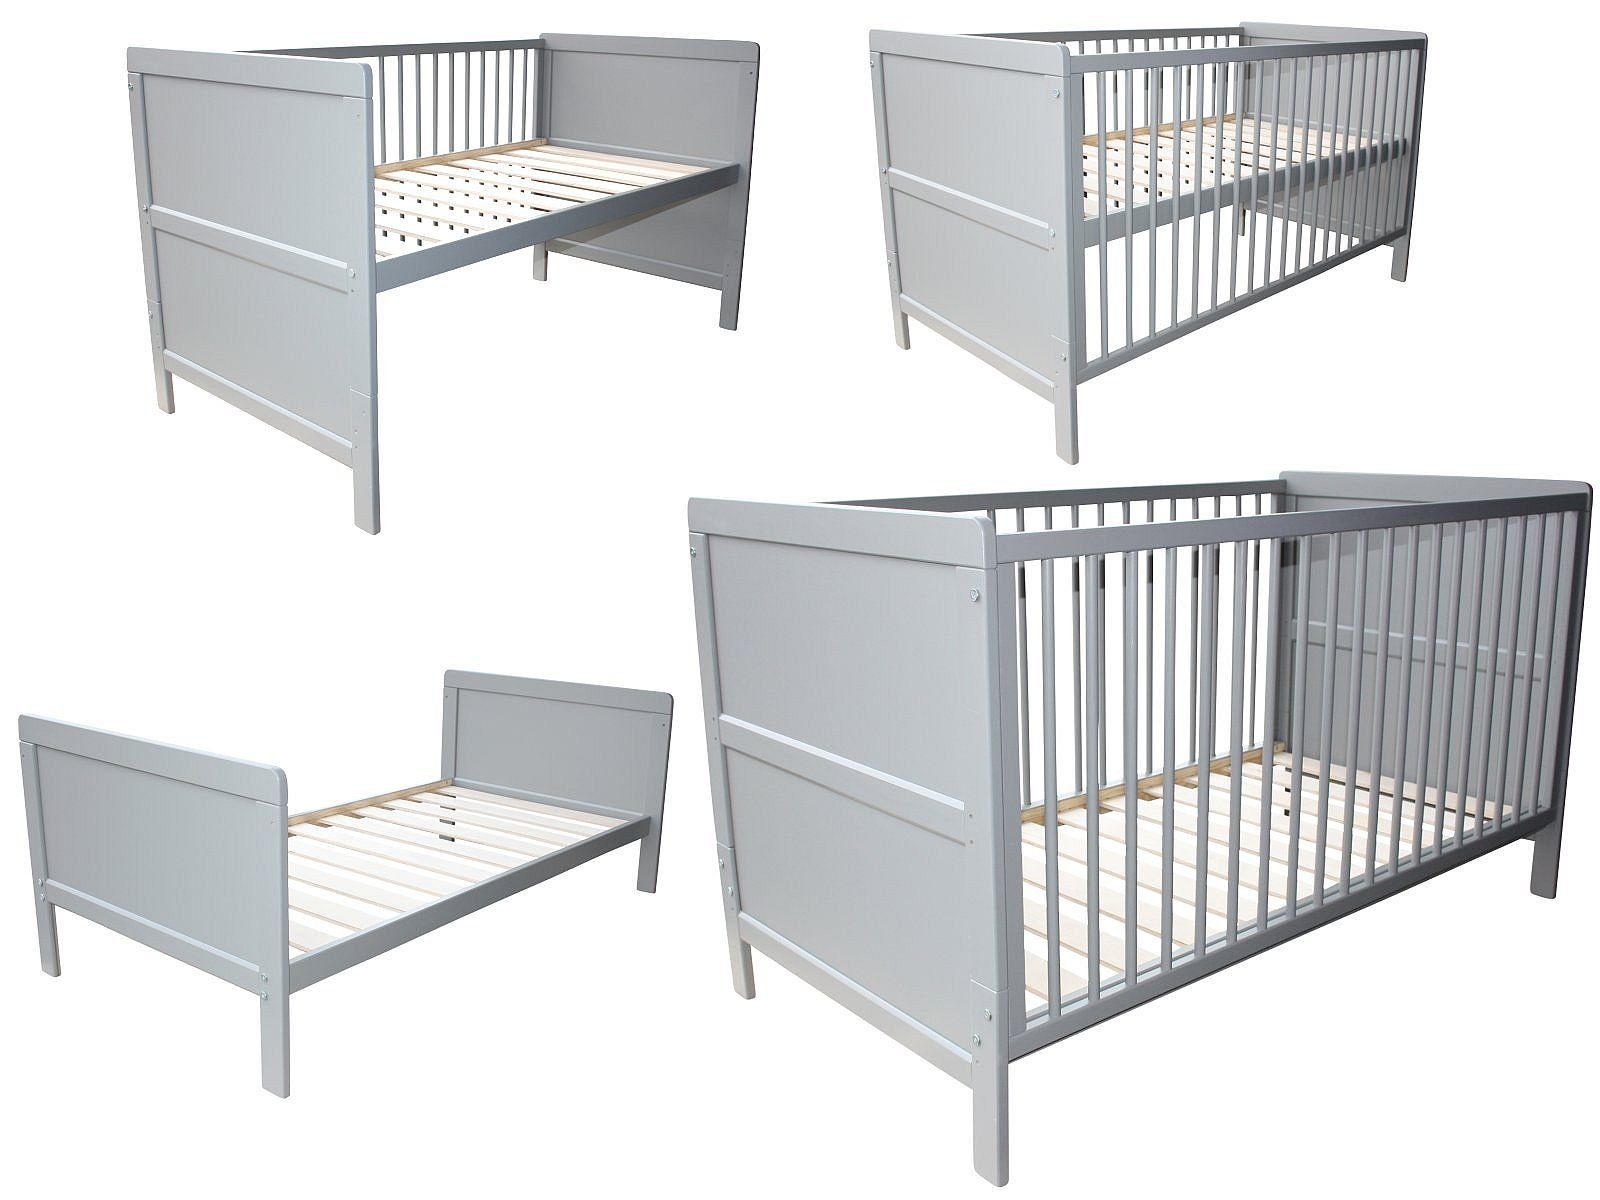 Micoland Kinderbett Kinderbett 3in1 Kinderbett / Beistellbett / Juniorbett  140x70cm grau